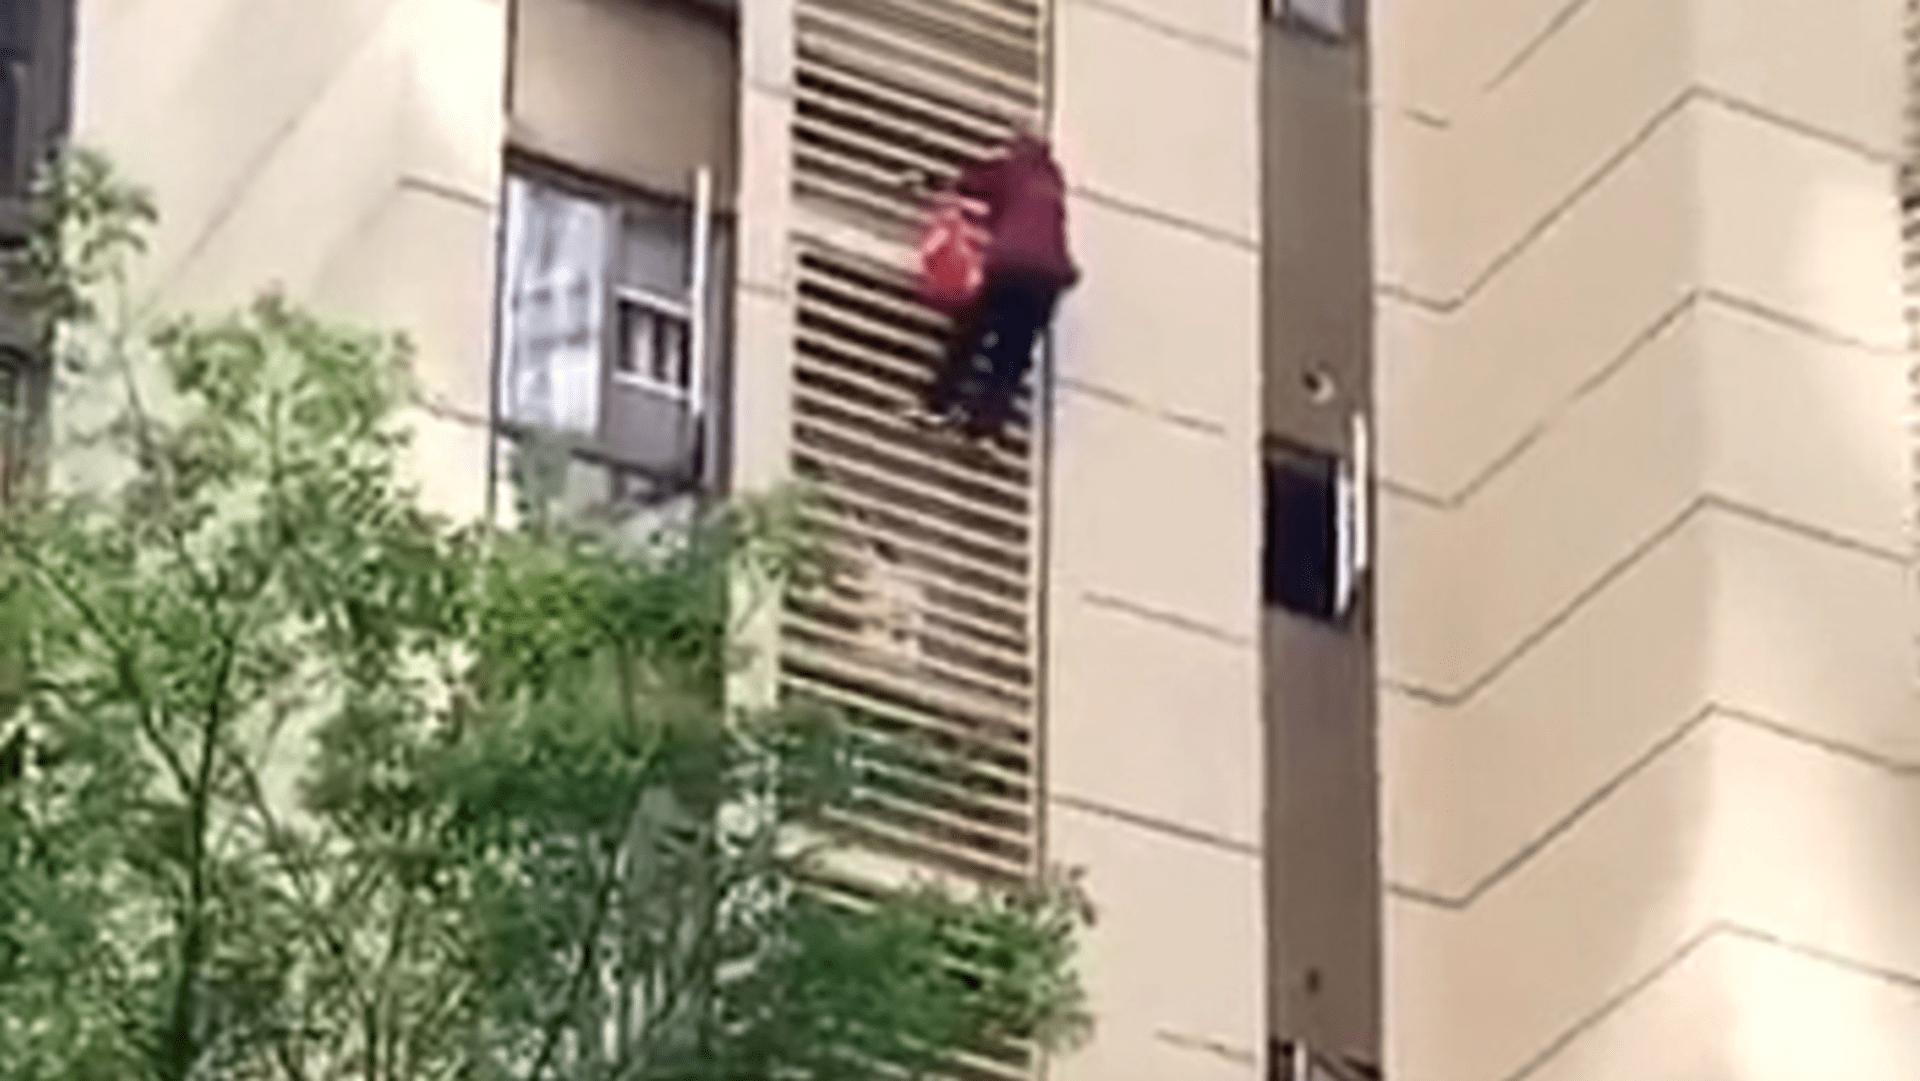 Babička s demencí utekla ze zamčeného bytu po stěně budovy 1